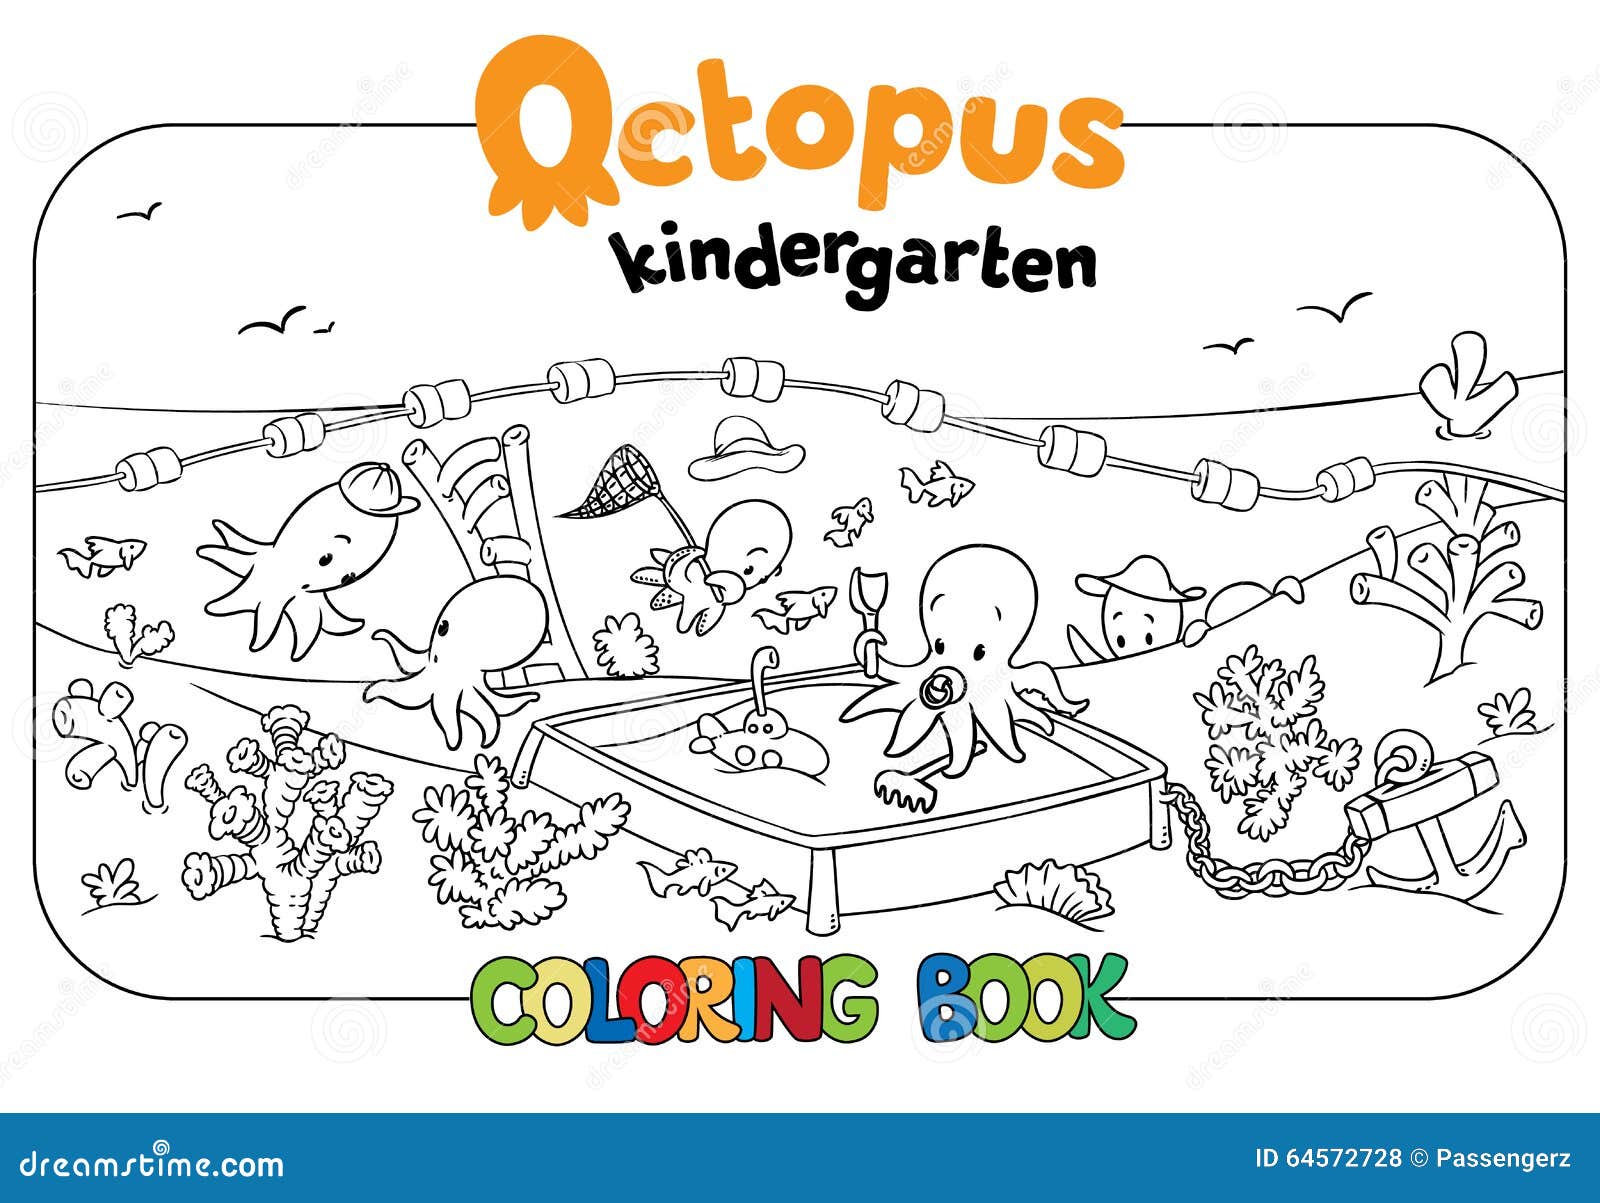 Octopus Kindergarten Coloring Book Stock Vector